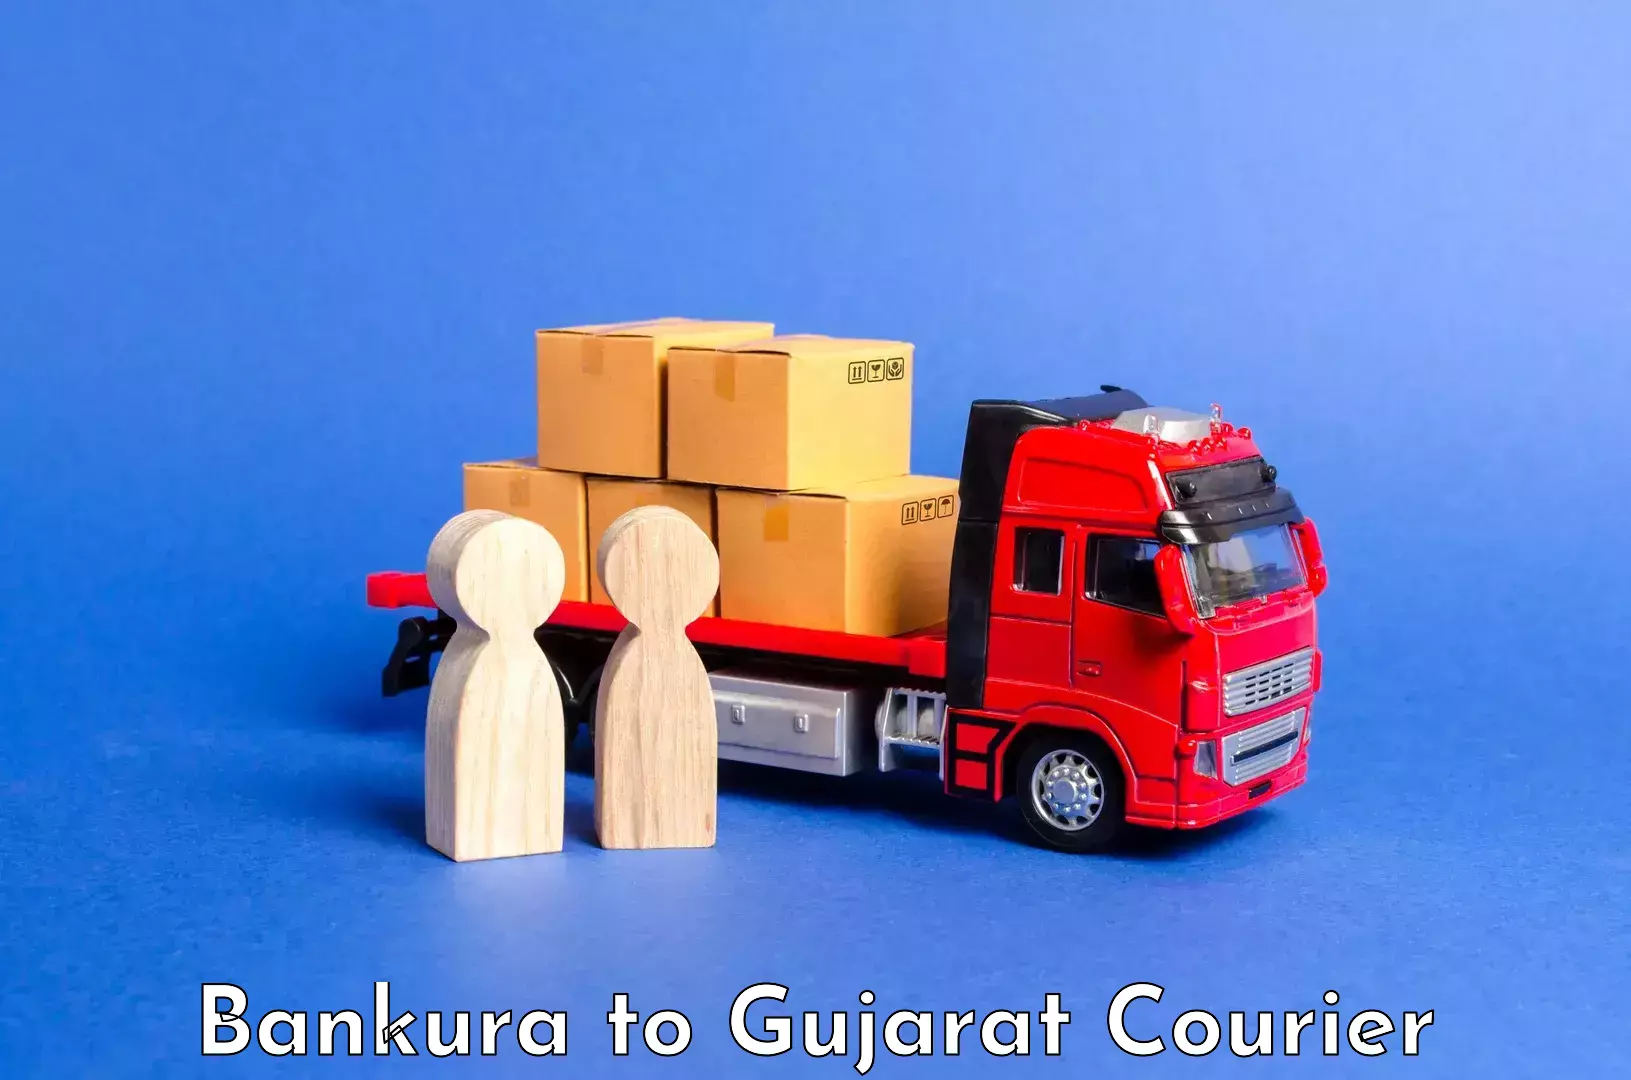 Baggage shipping service Bankura to Dholka